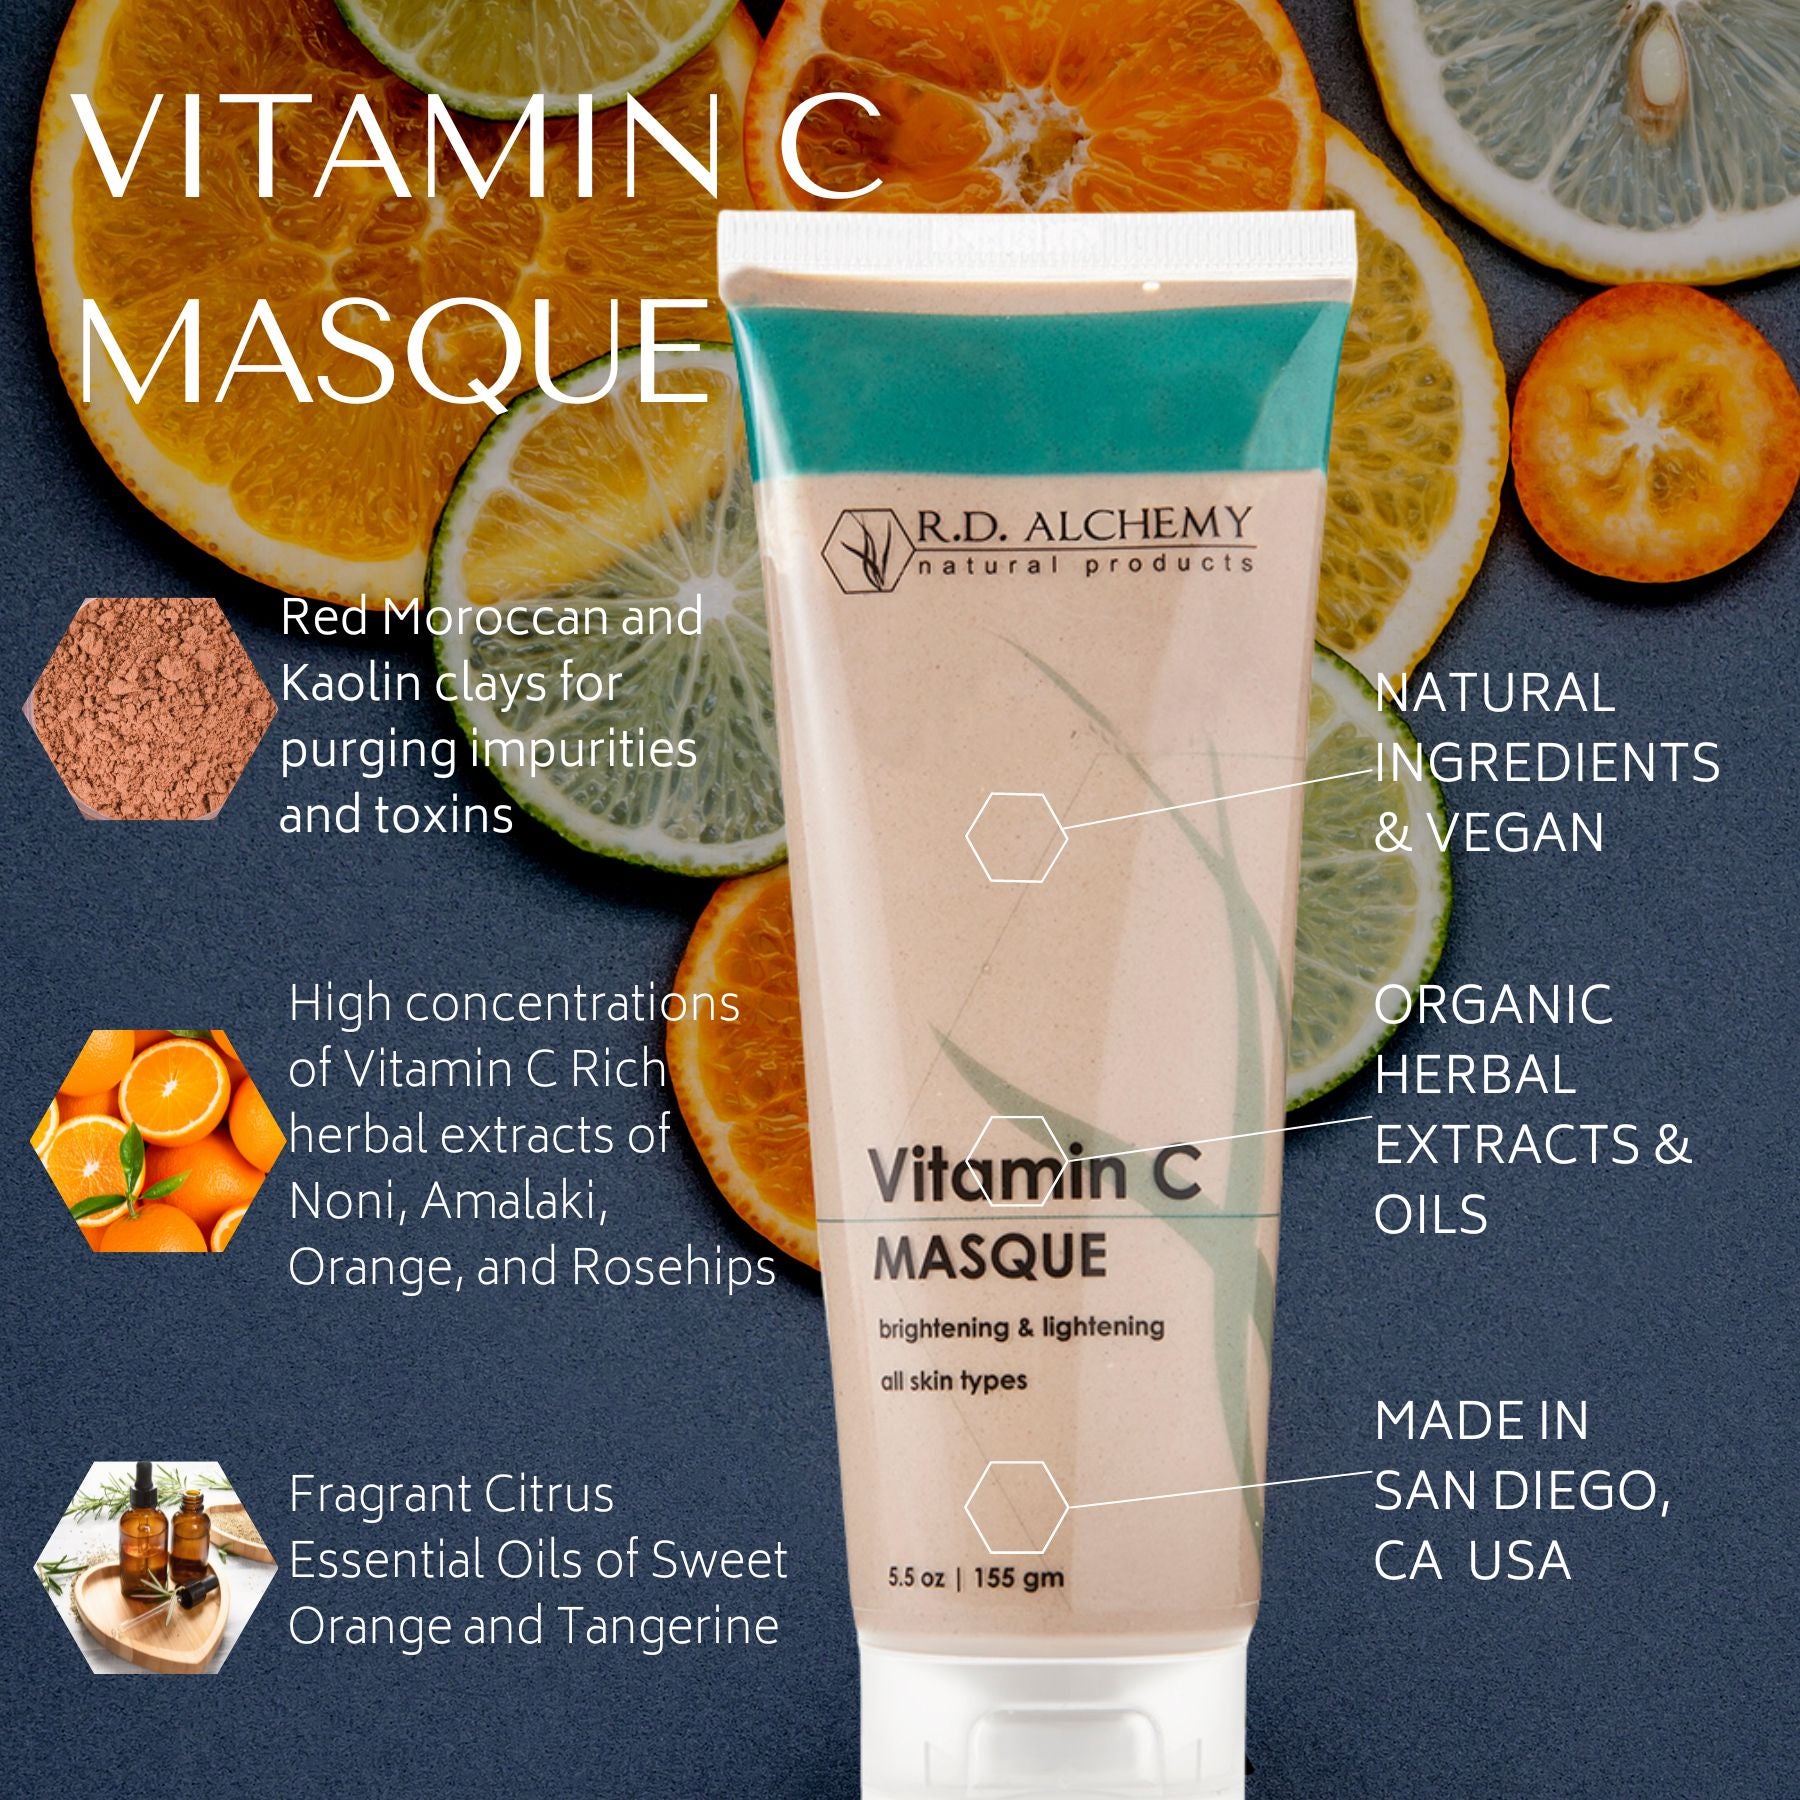 Vitamin C Masque